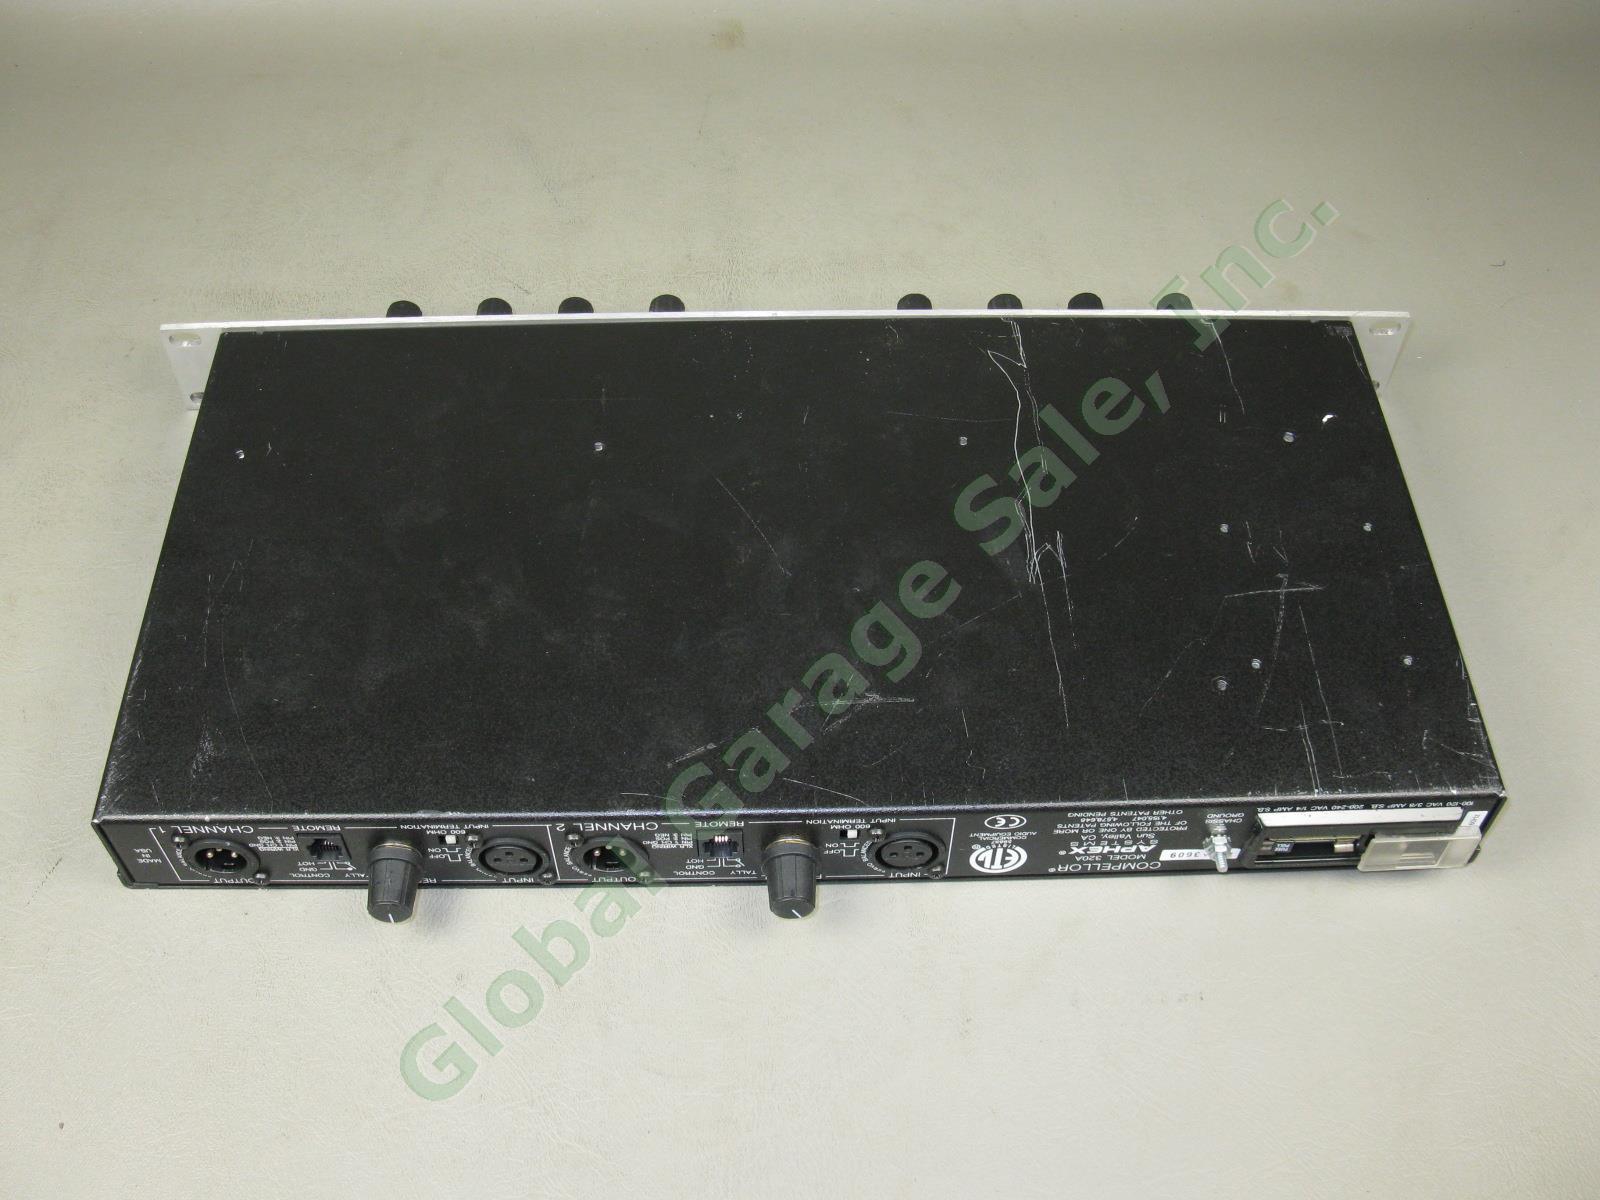 Aphex Compellor 320A Dual Channel Rack Mount Audio Compressor Leveler Limiter NR 9